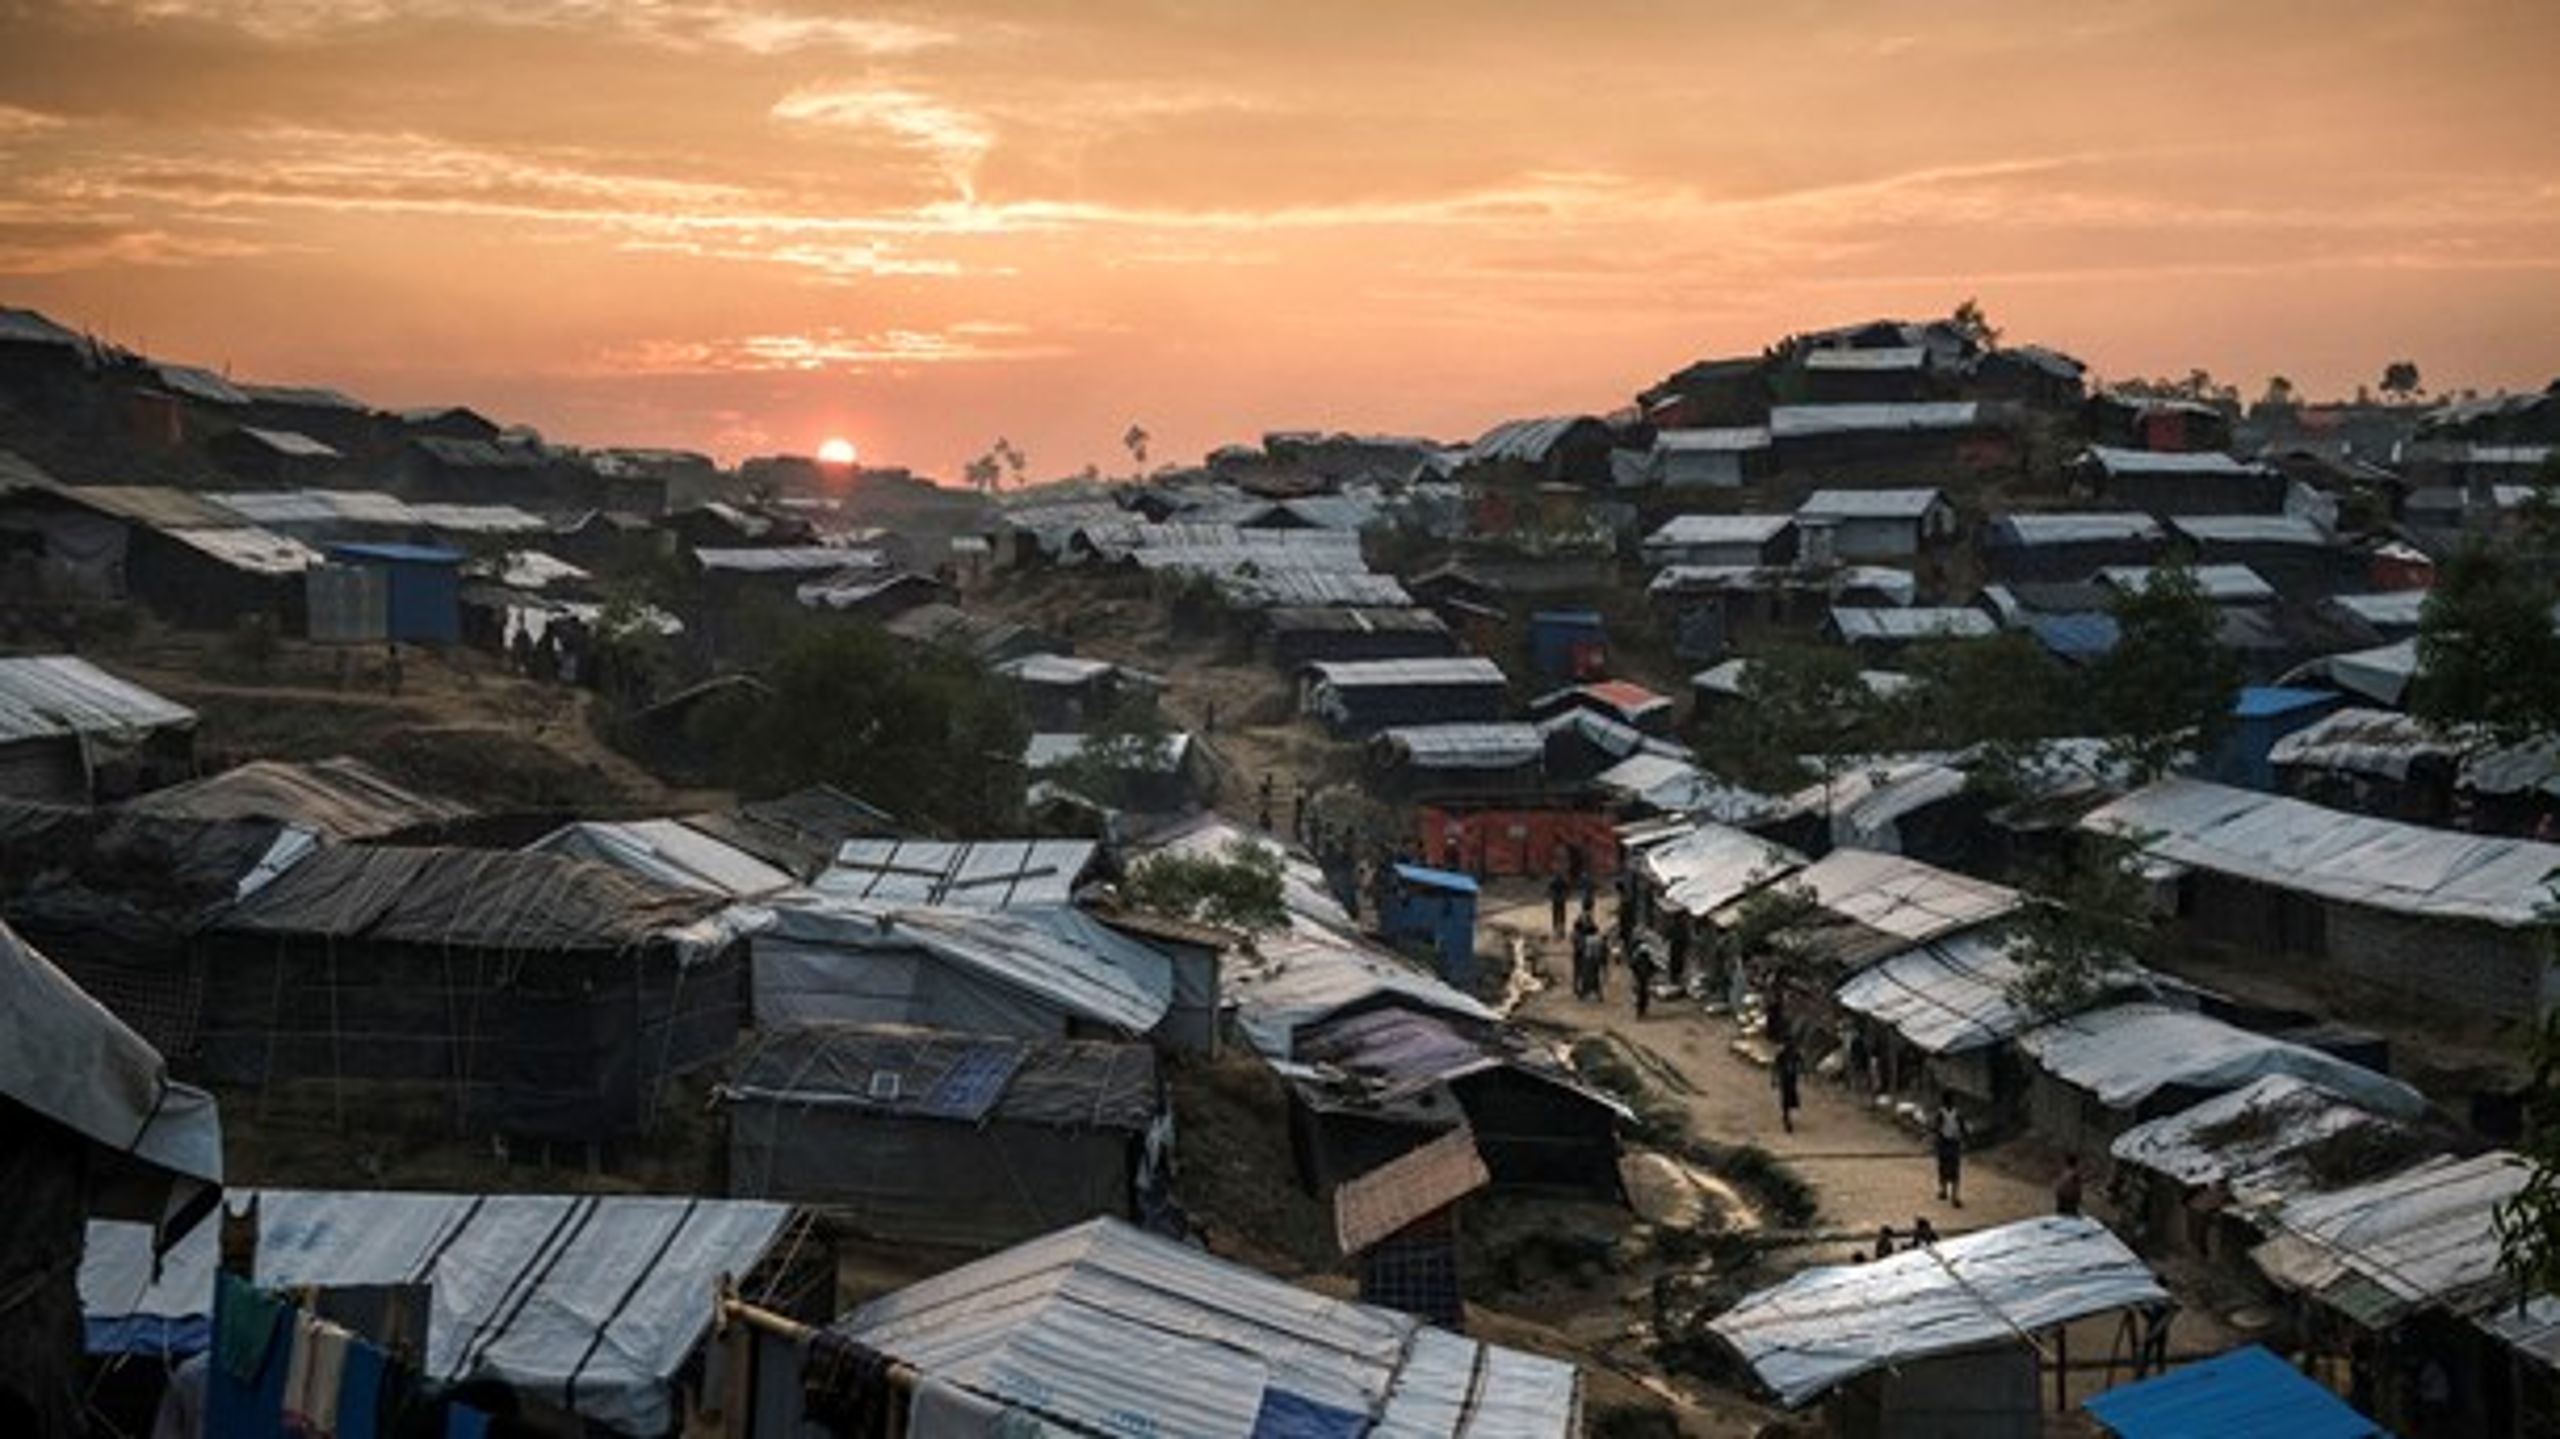 Verdens største flygtningelejr ligger i Bangladesh og er befolket af rohingyaer – et forfulgt muslimsk mindretal i nabolandet Myanmar.